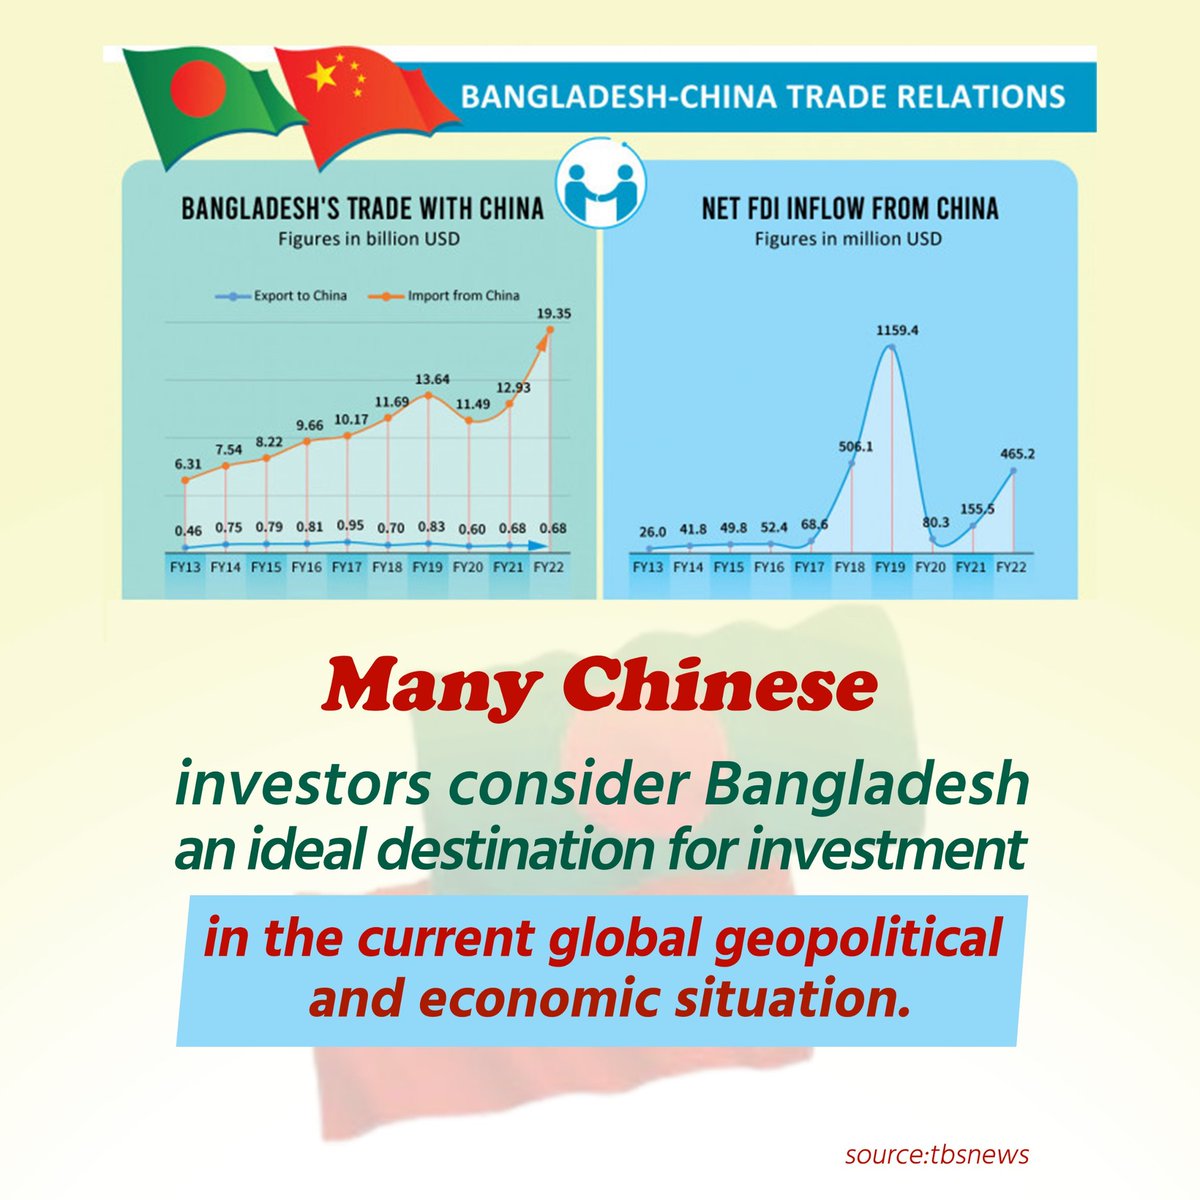 Bangladesh-China Trade relations Best ever.
#China #Chinese #Bangladesh #mengjala #Bengali #relationships #trade